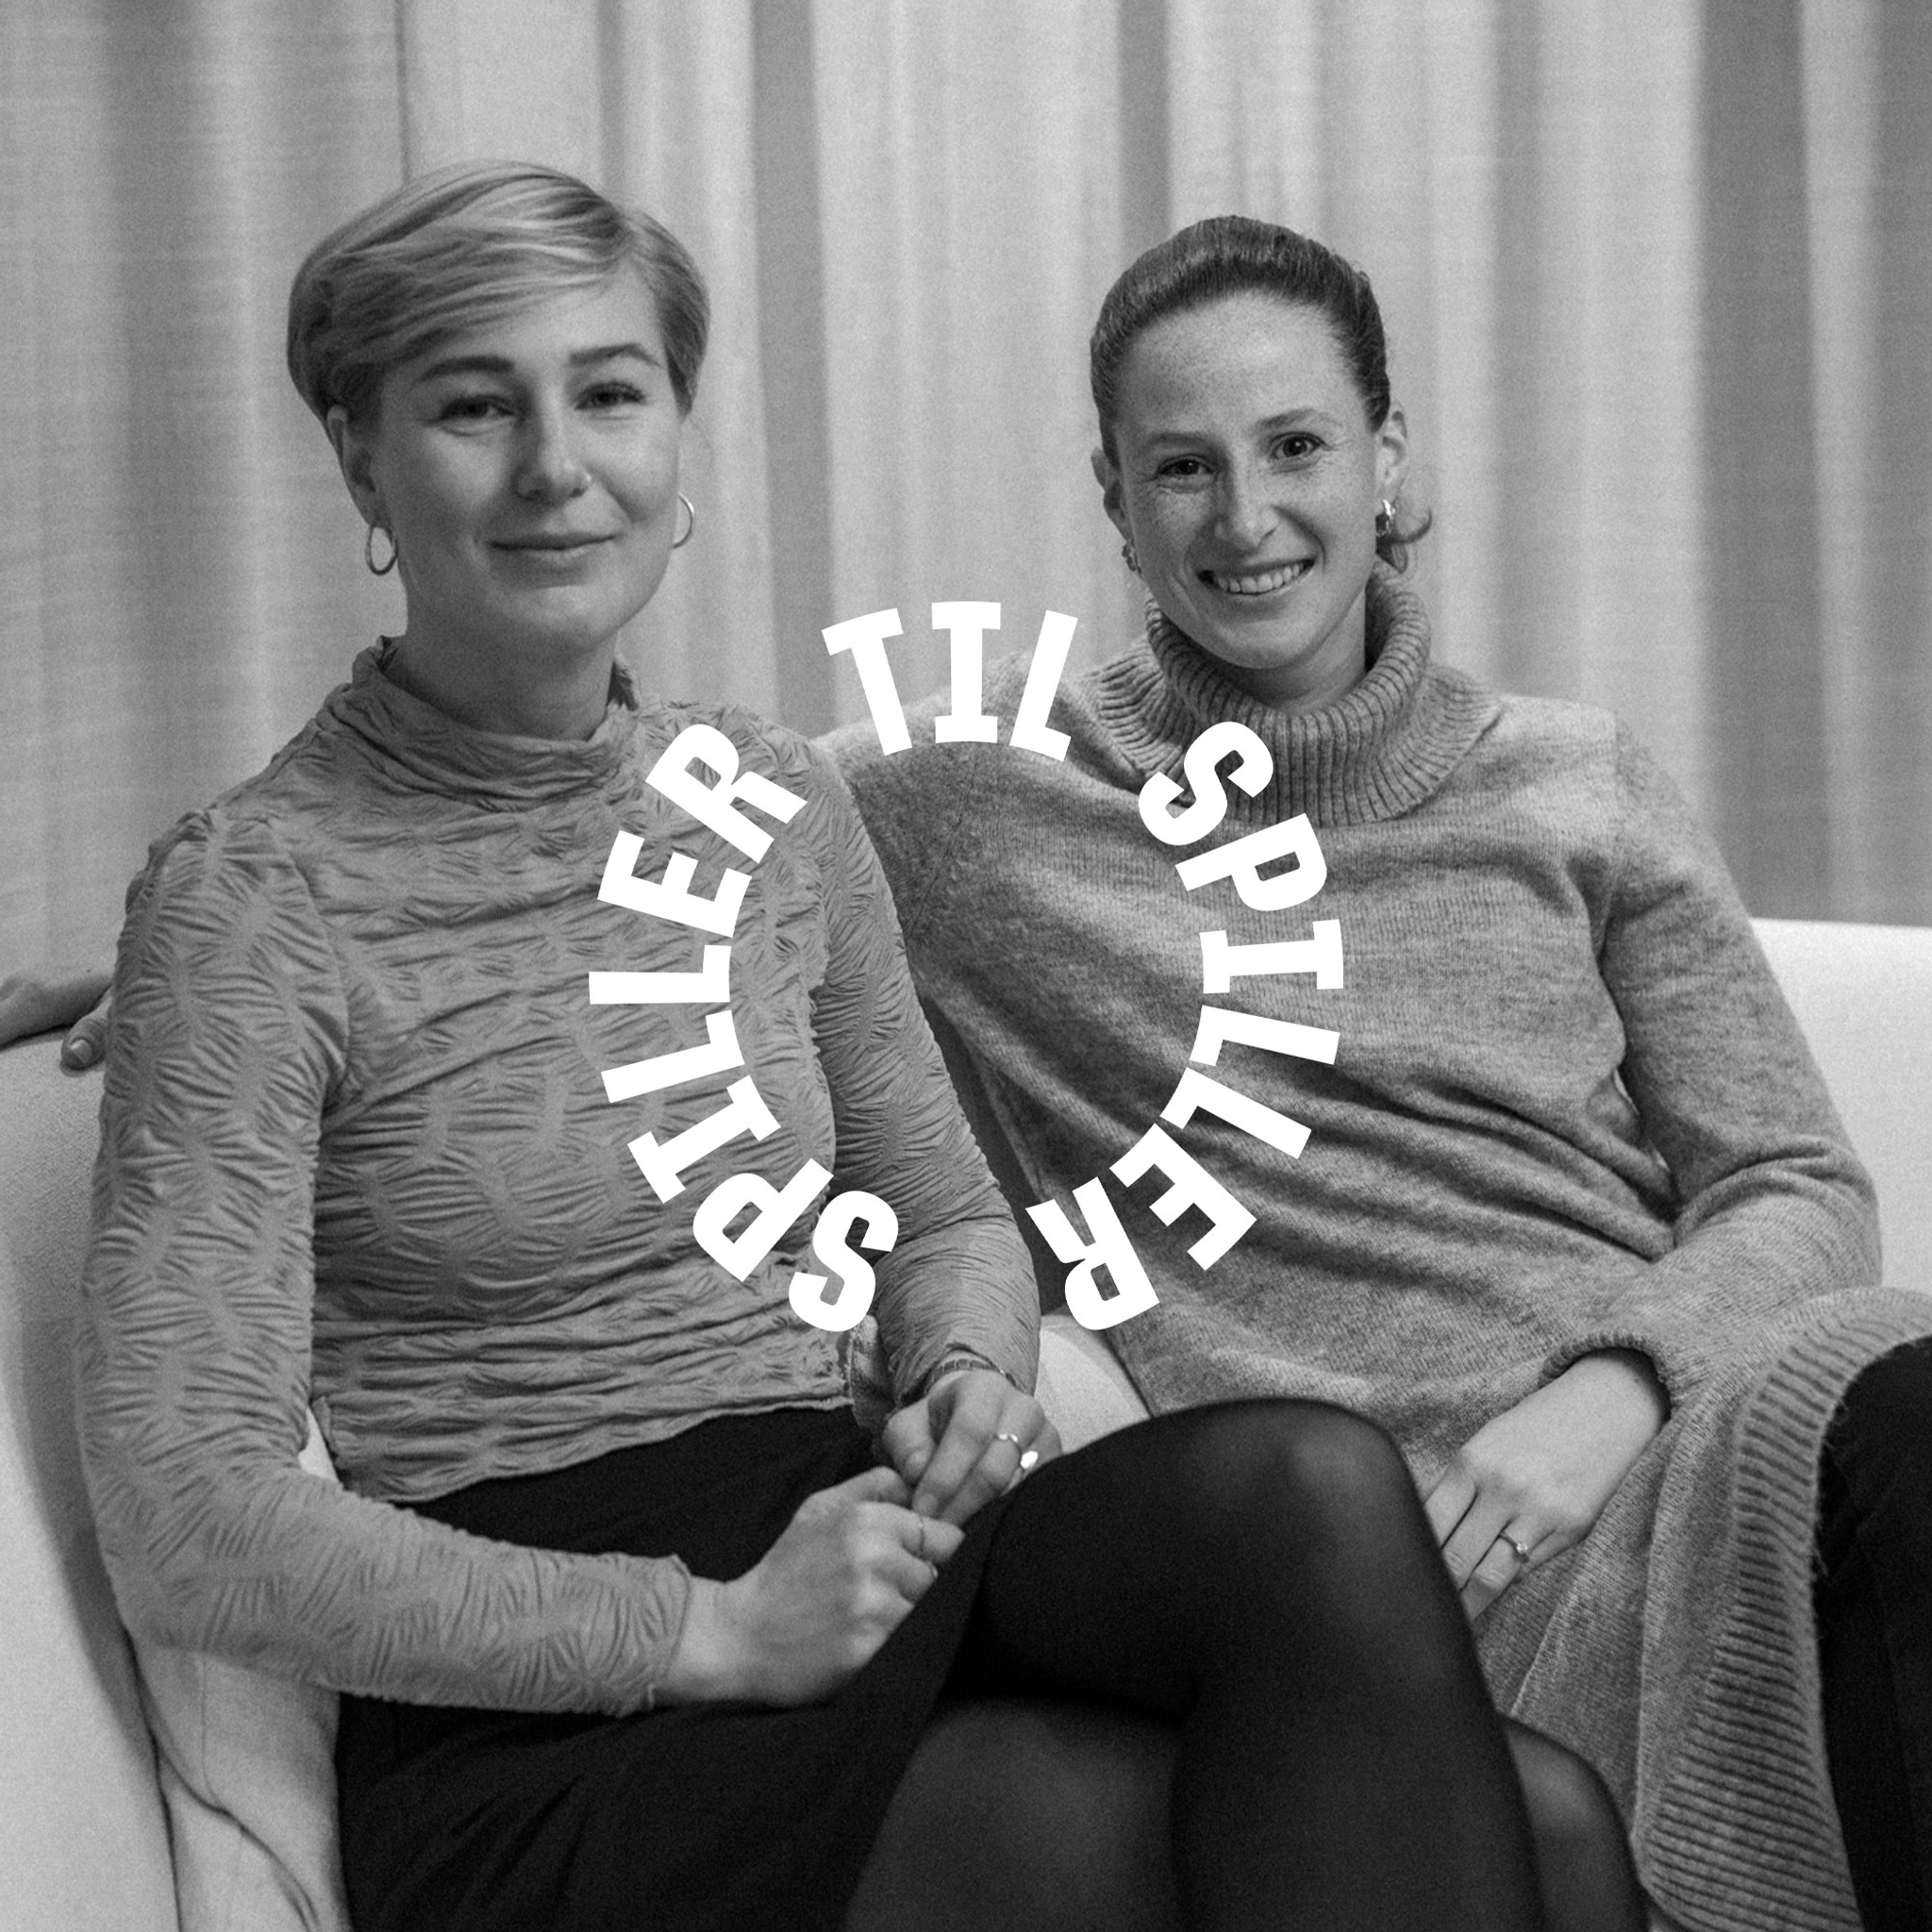 Nicoline Sørensen og Luna Gevitz om karrierestop, aktivisme og fremtiden